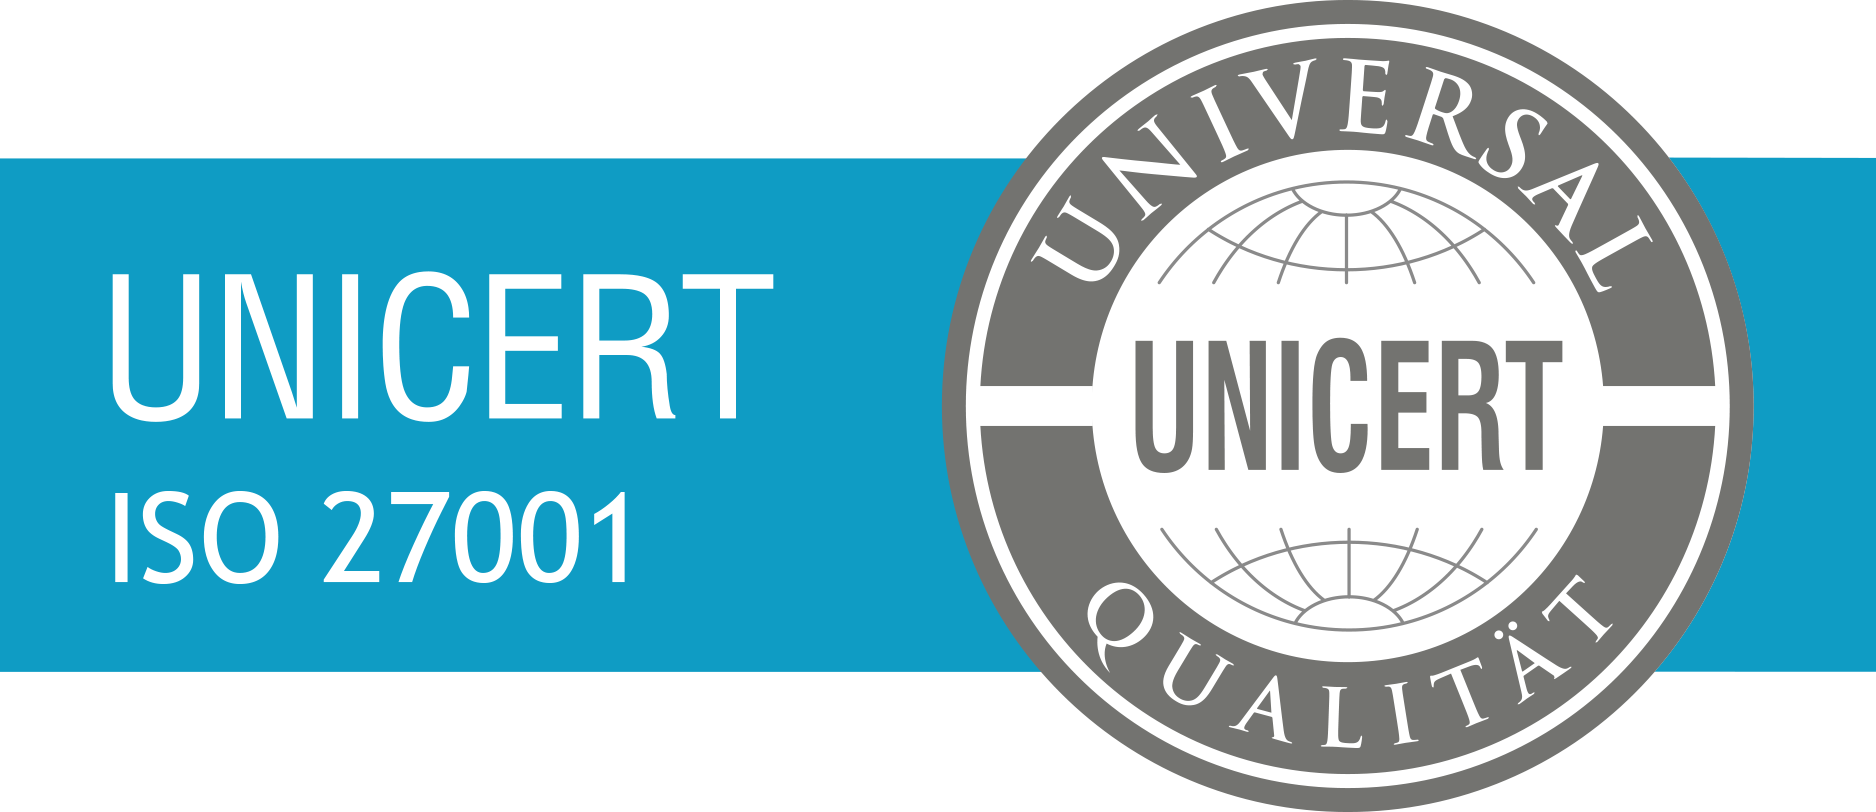 unicert-logo-iso27001-1